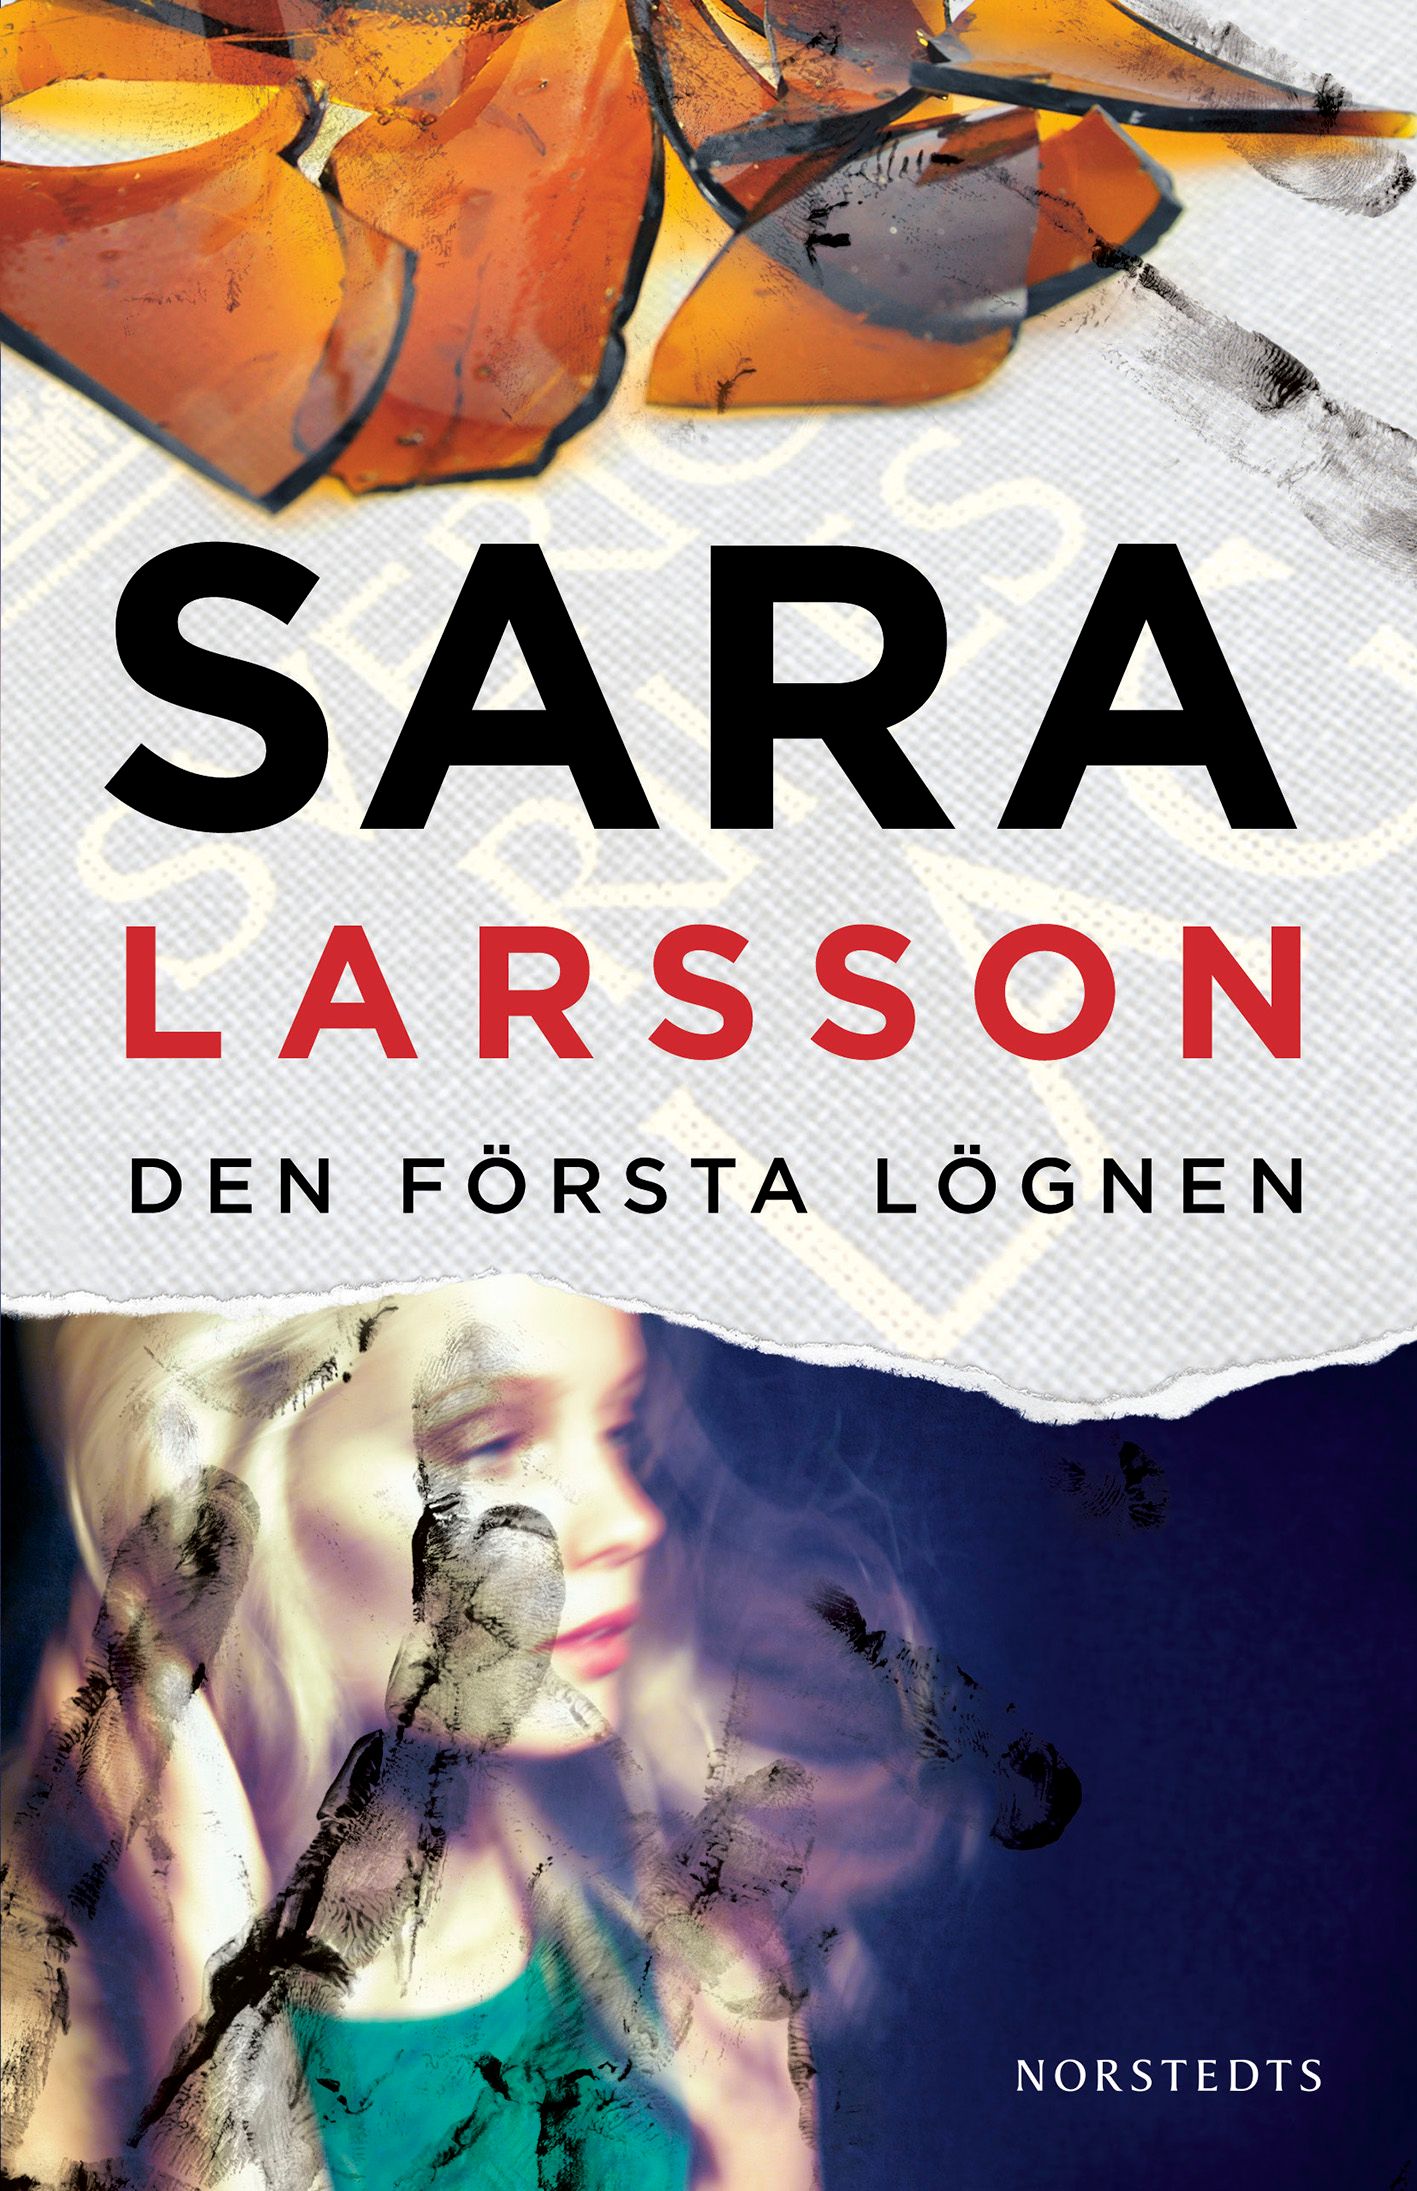 Den första lögnen, eBook by Sara Larsson